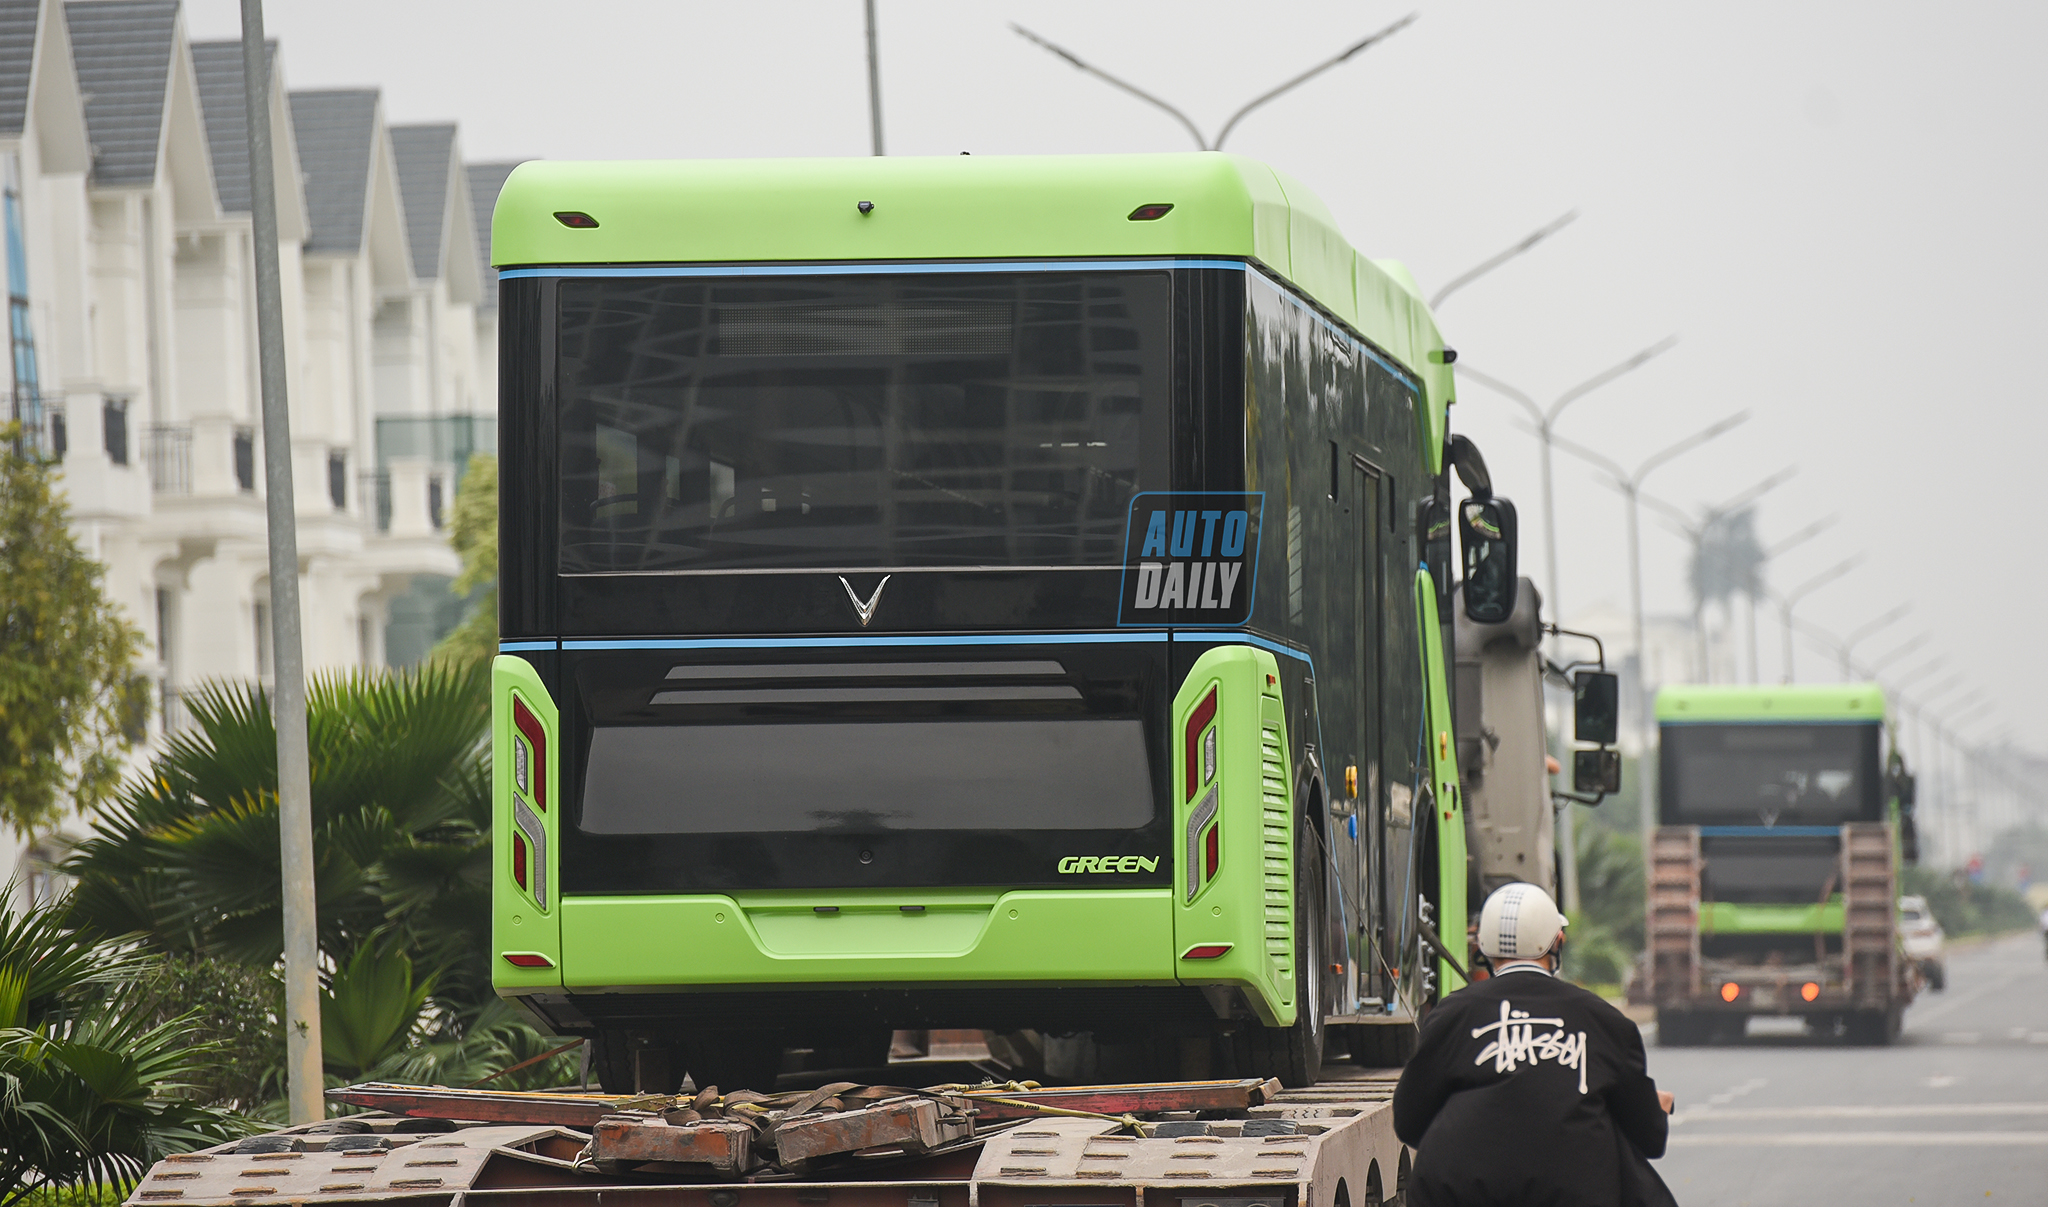 Chùm ảnh loạt xe Bus điện VinFast có mặt tại Hà Nội, sẵn sàng chạy thí điểm dsc-3888-copy.jpg